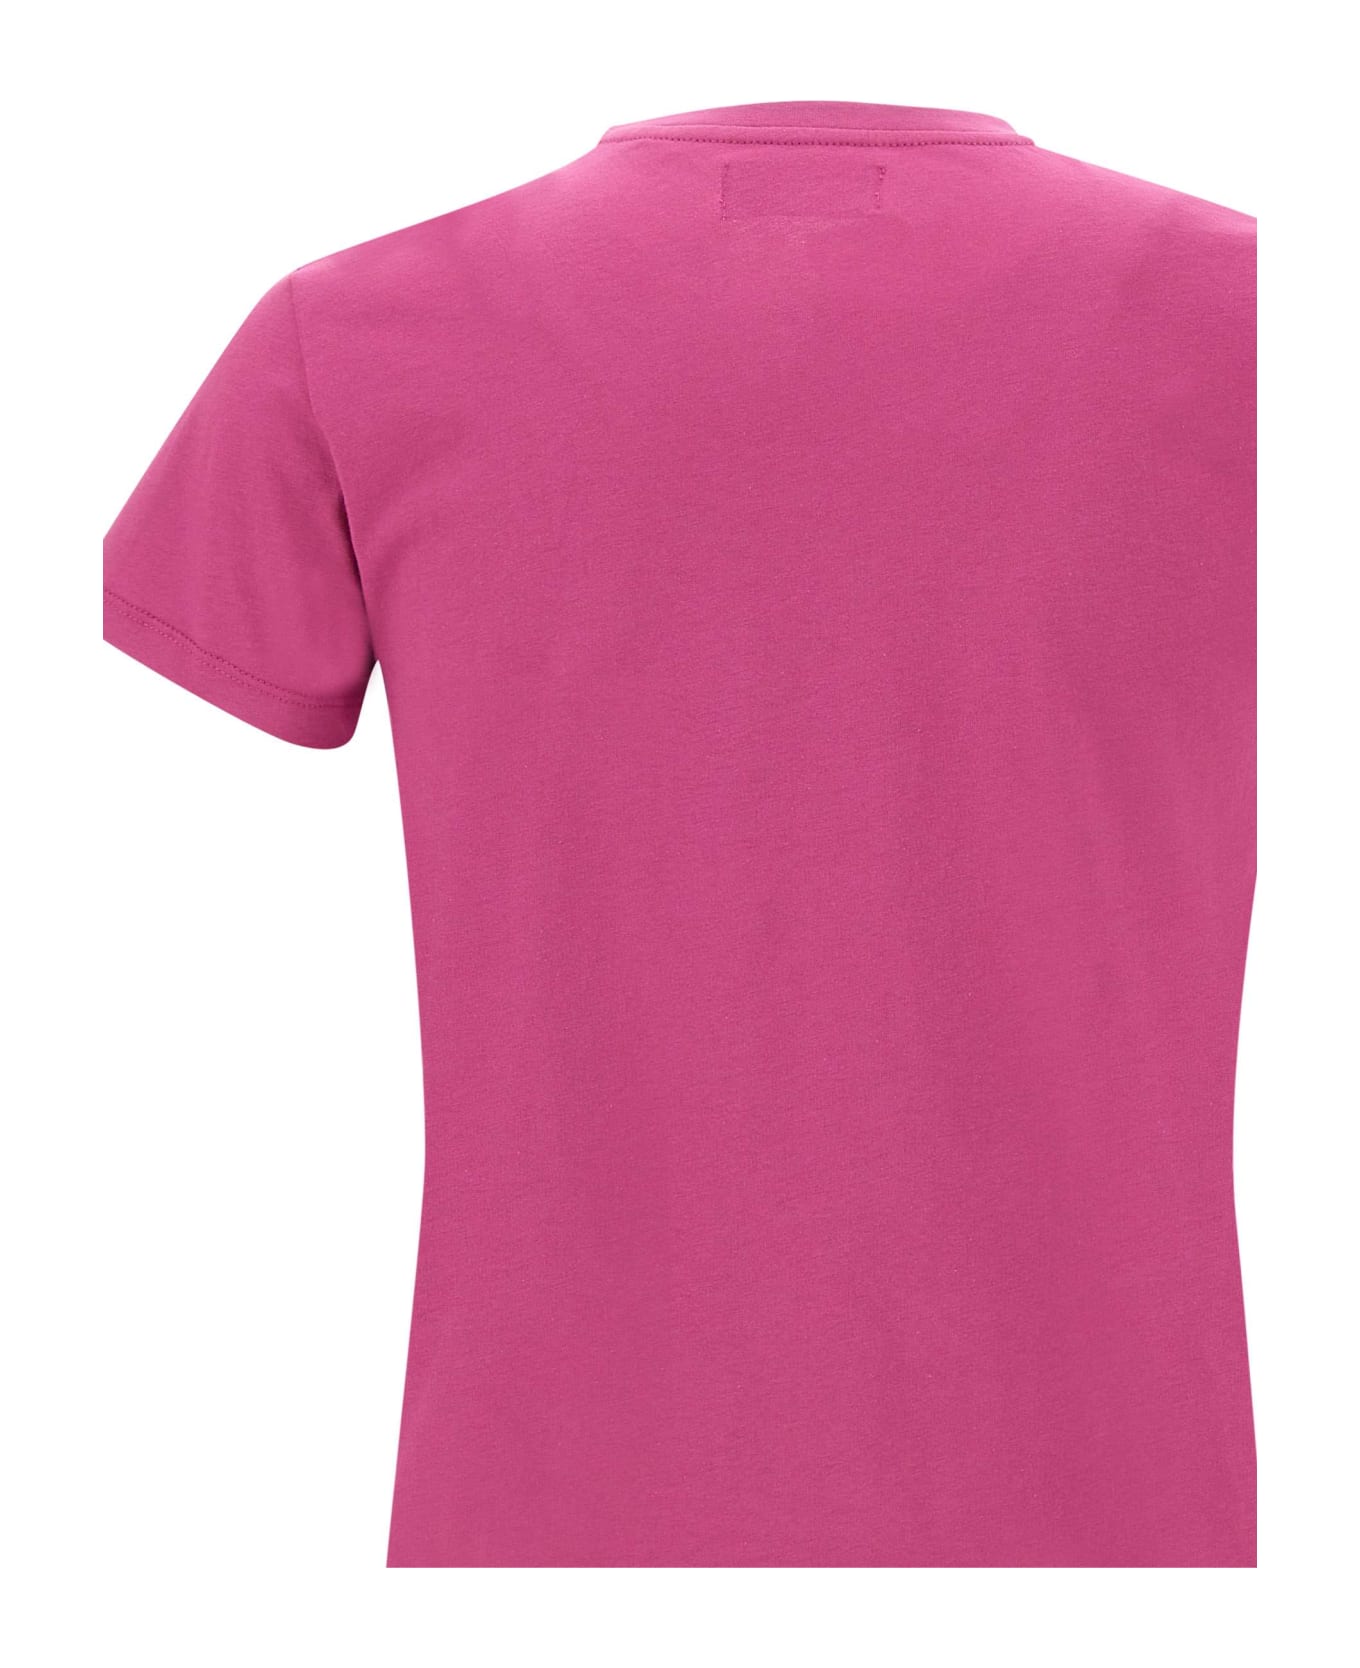 Vilebrequin Cotton T-shirt - FUCHSIA